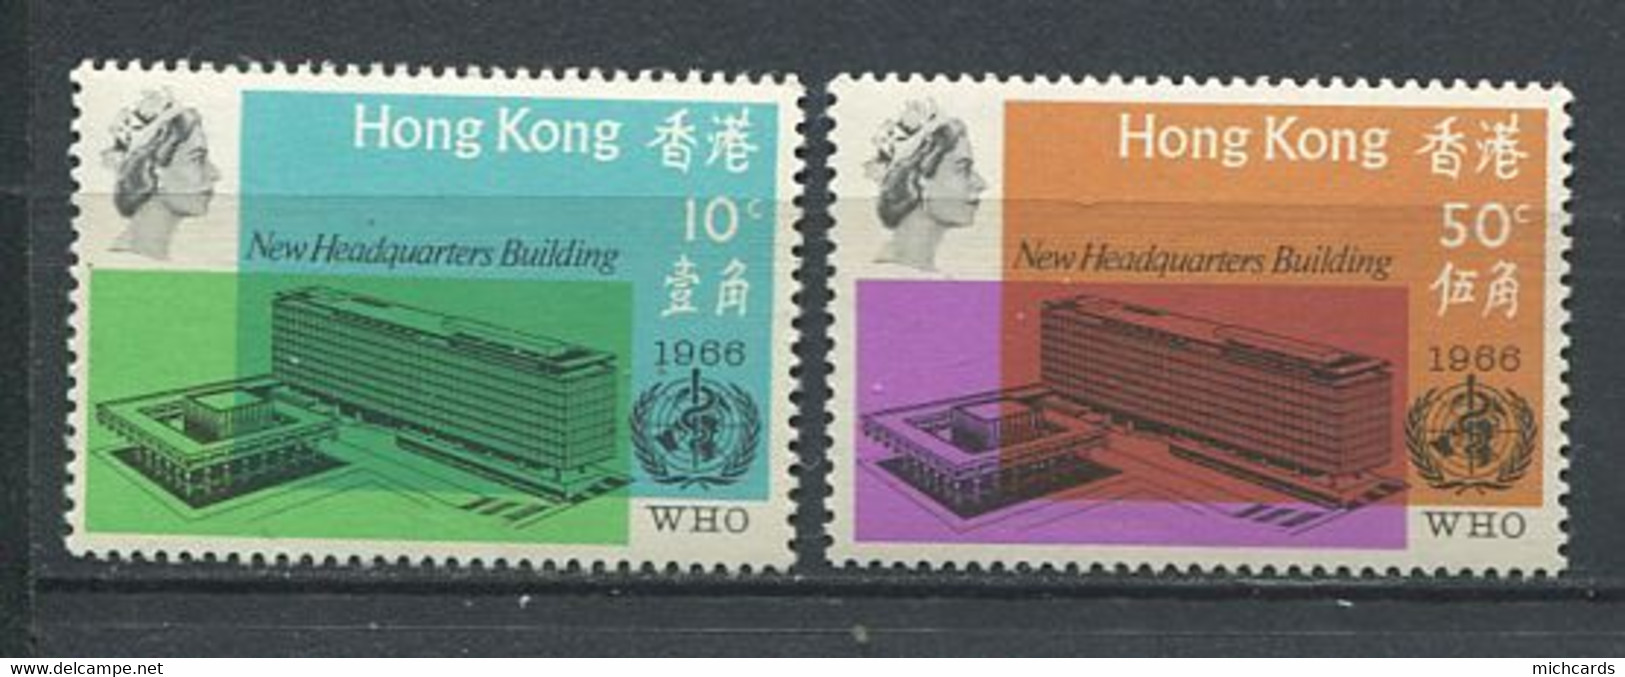 232 HONG KONG 1966 - Yvert 220/21 - Siege Sante A Geneve  - Neuf ** (MNH) Sans Trace De Charniere - Ongebruikt